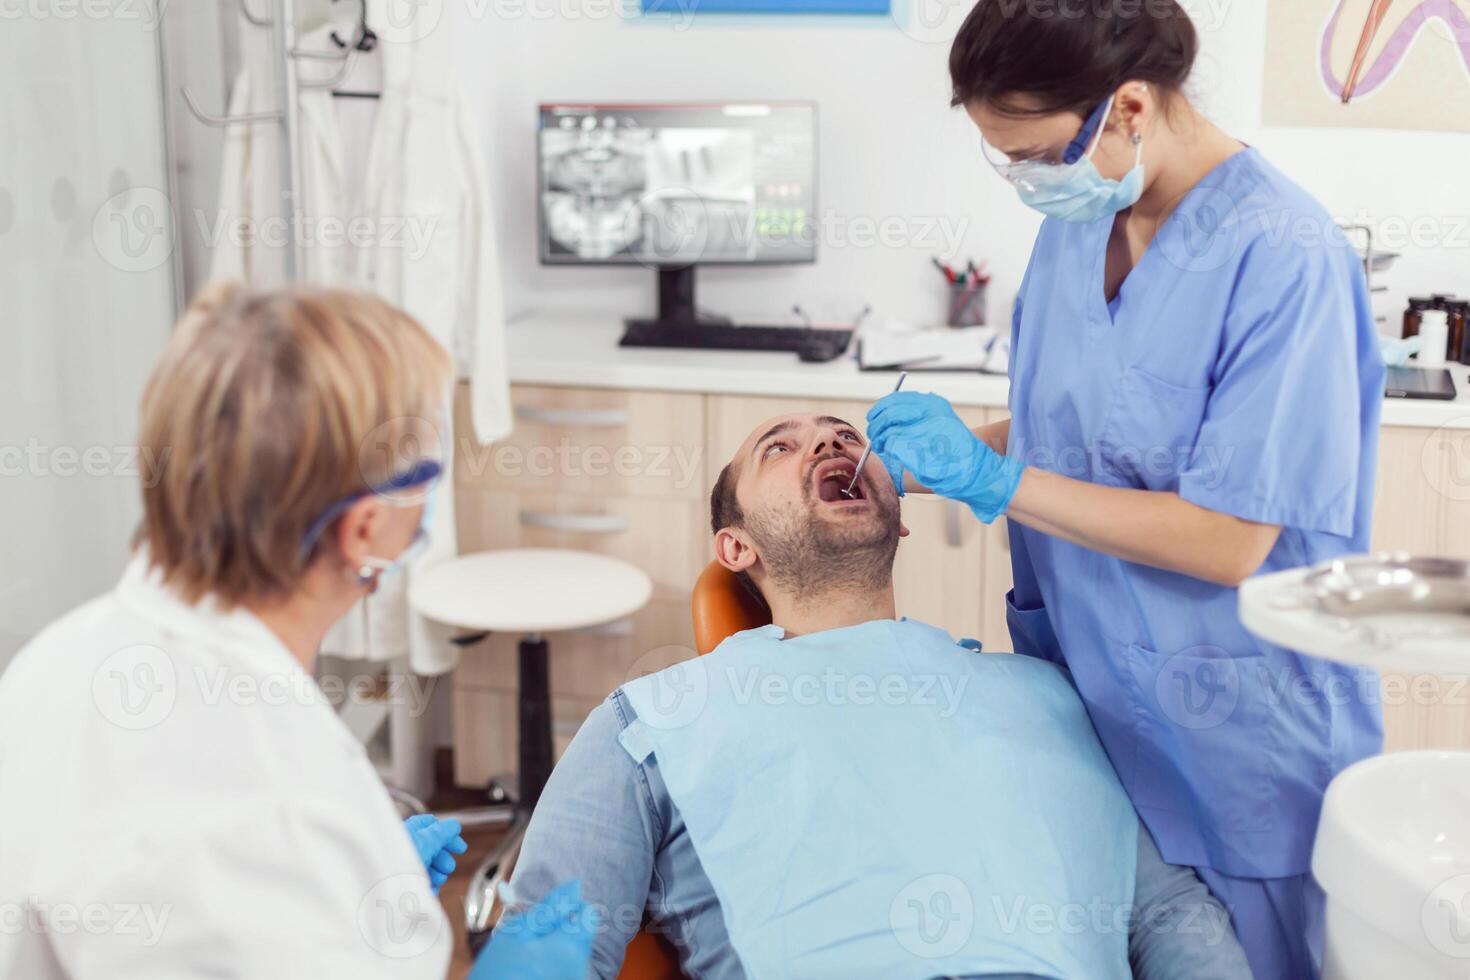 sjukhus sjuksköterska i medicinsk enhetlig ser in i sjuk pacient mun analyserar tänder hälsa framställning för stomatologisk kirurgi. stomatolog doktorer arbetssätt i ortodontisk klinik foto